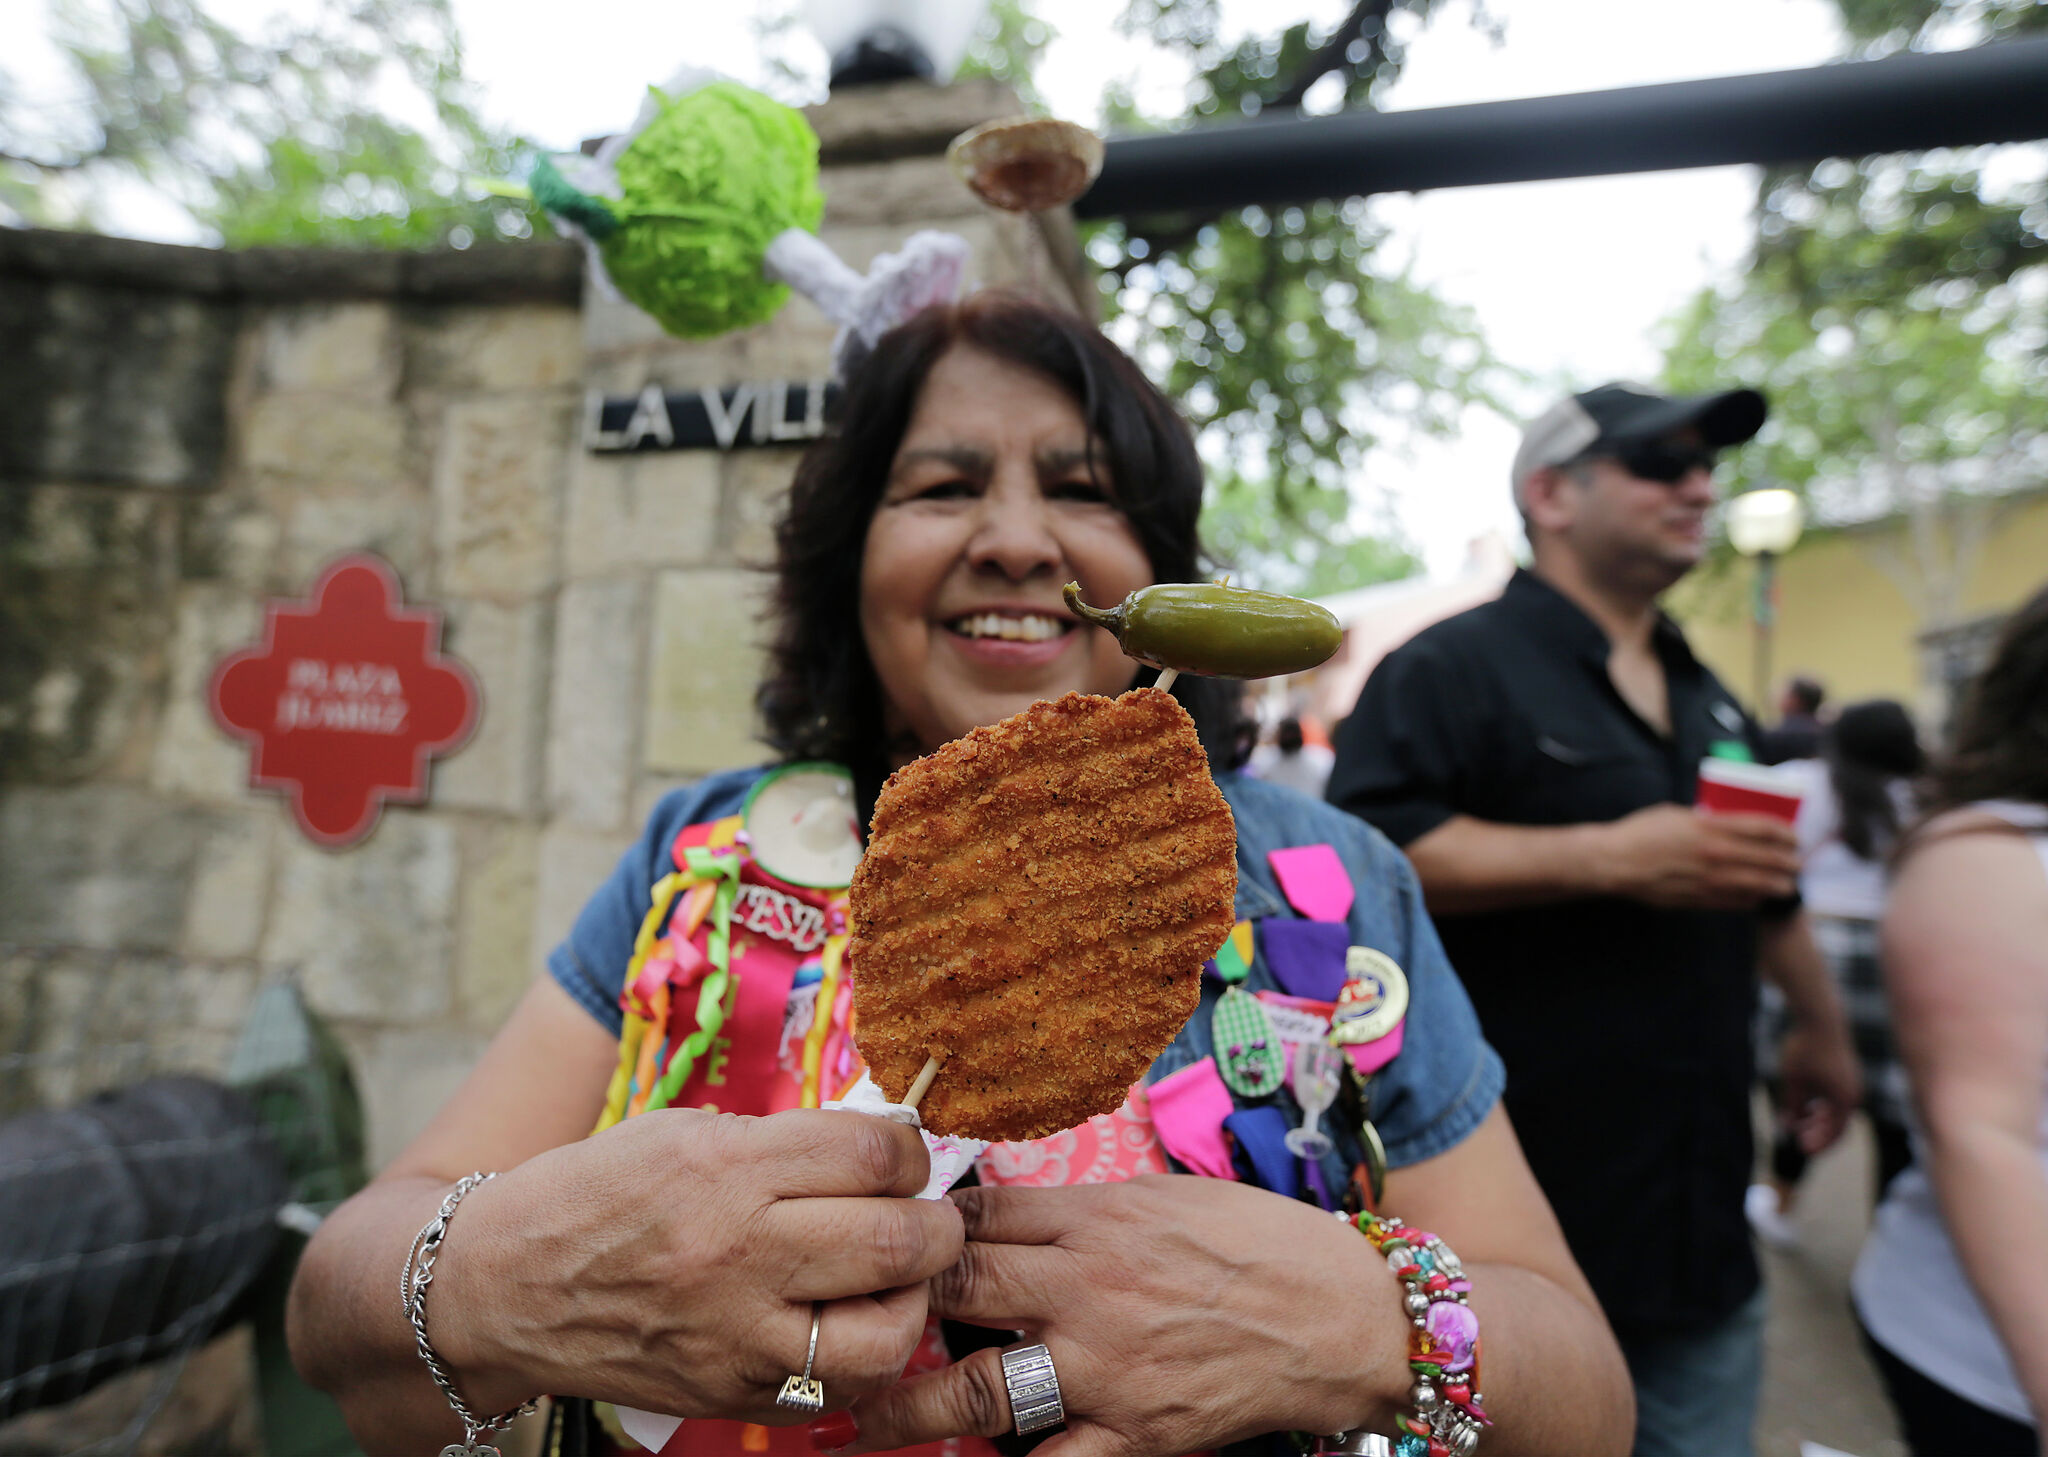 Taste of Fiesta le dará a San Antonio su comida de Fiesta la próxima semana